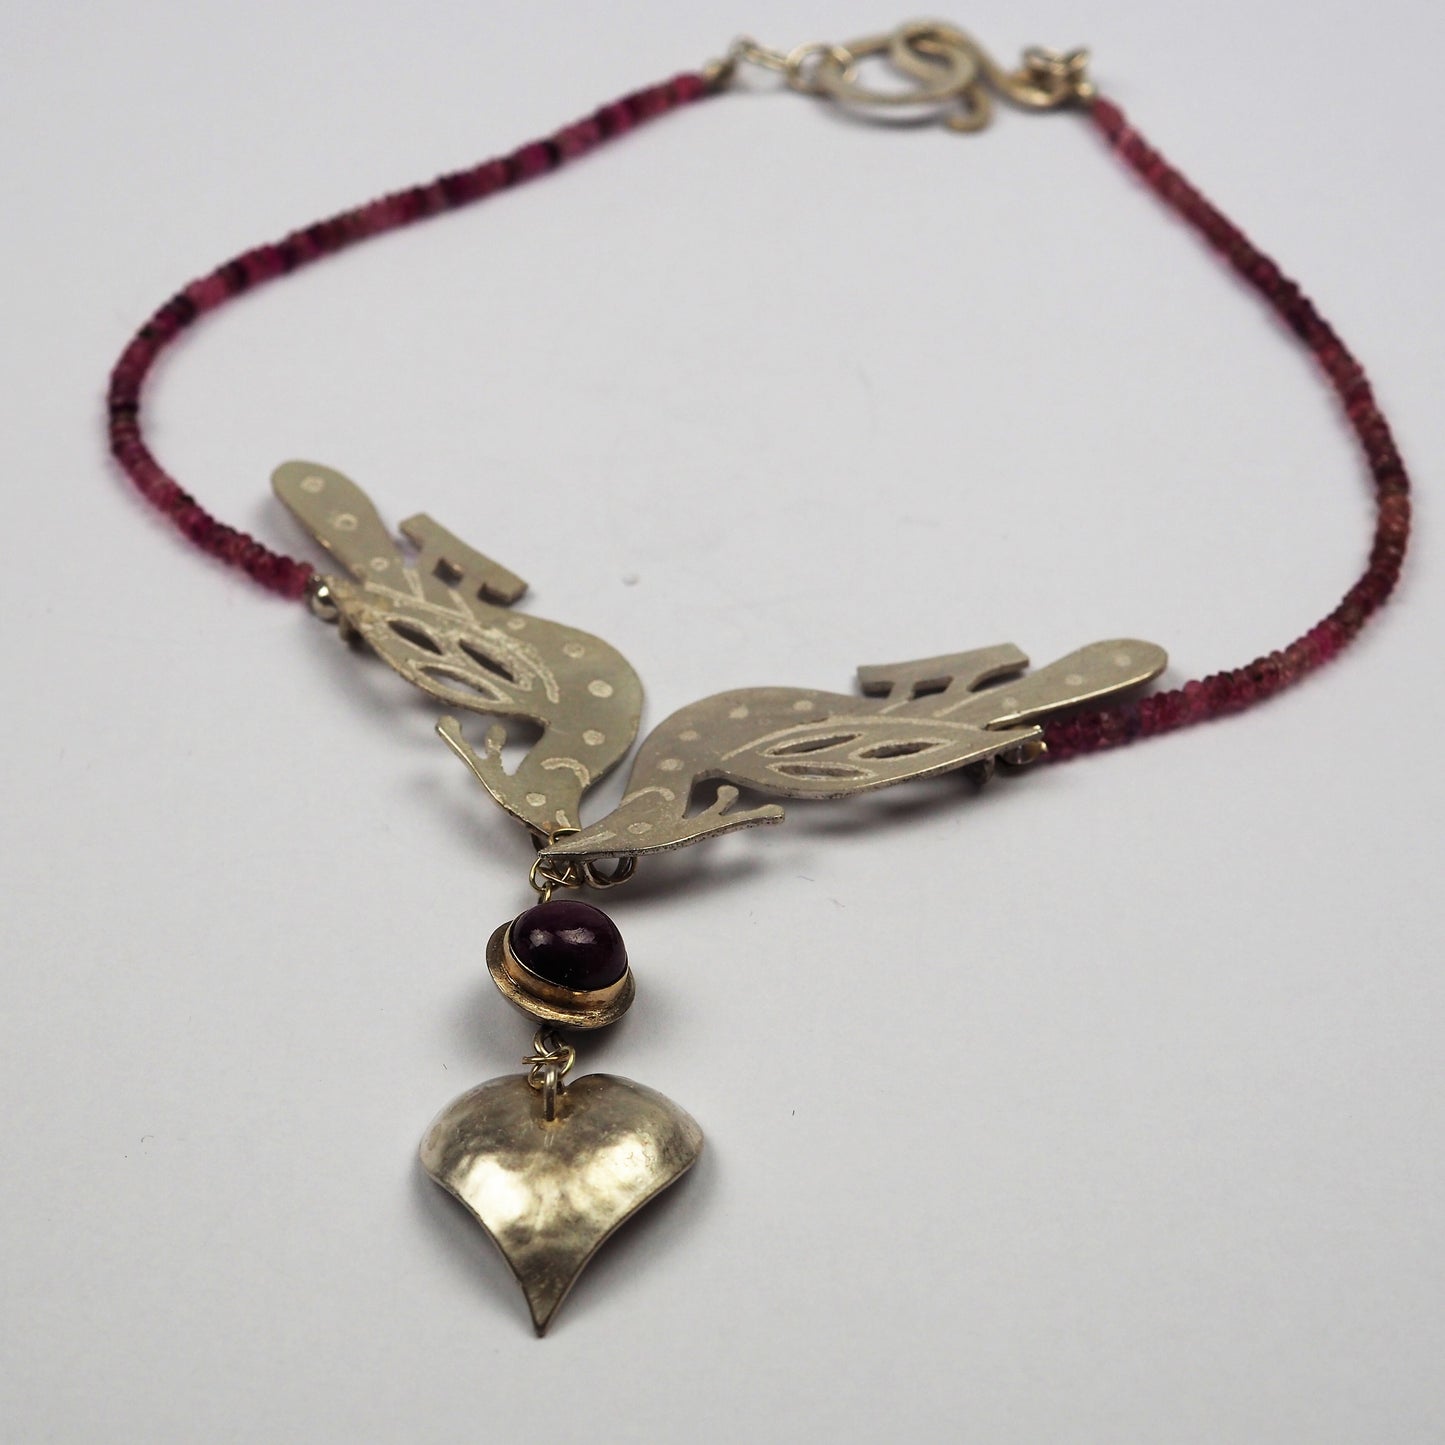 Ilett, Rebecca - Necklace With Silver Pendant